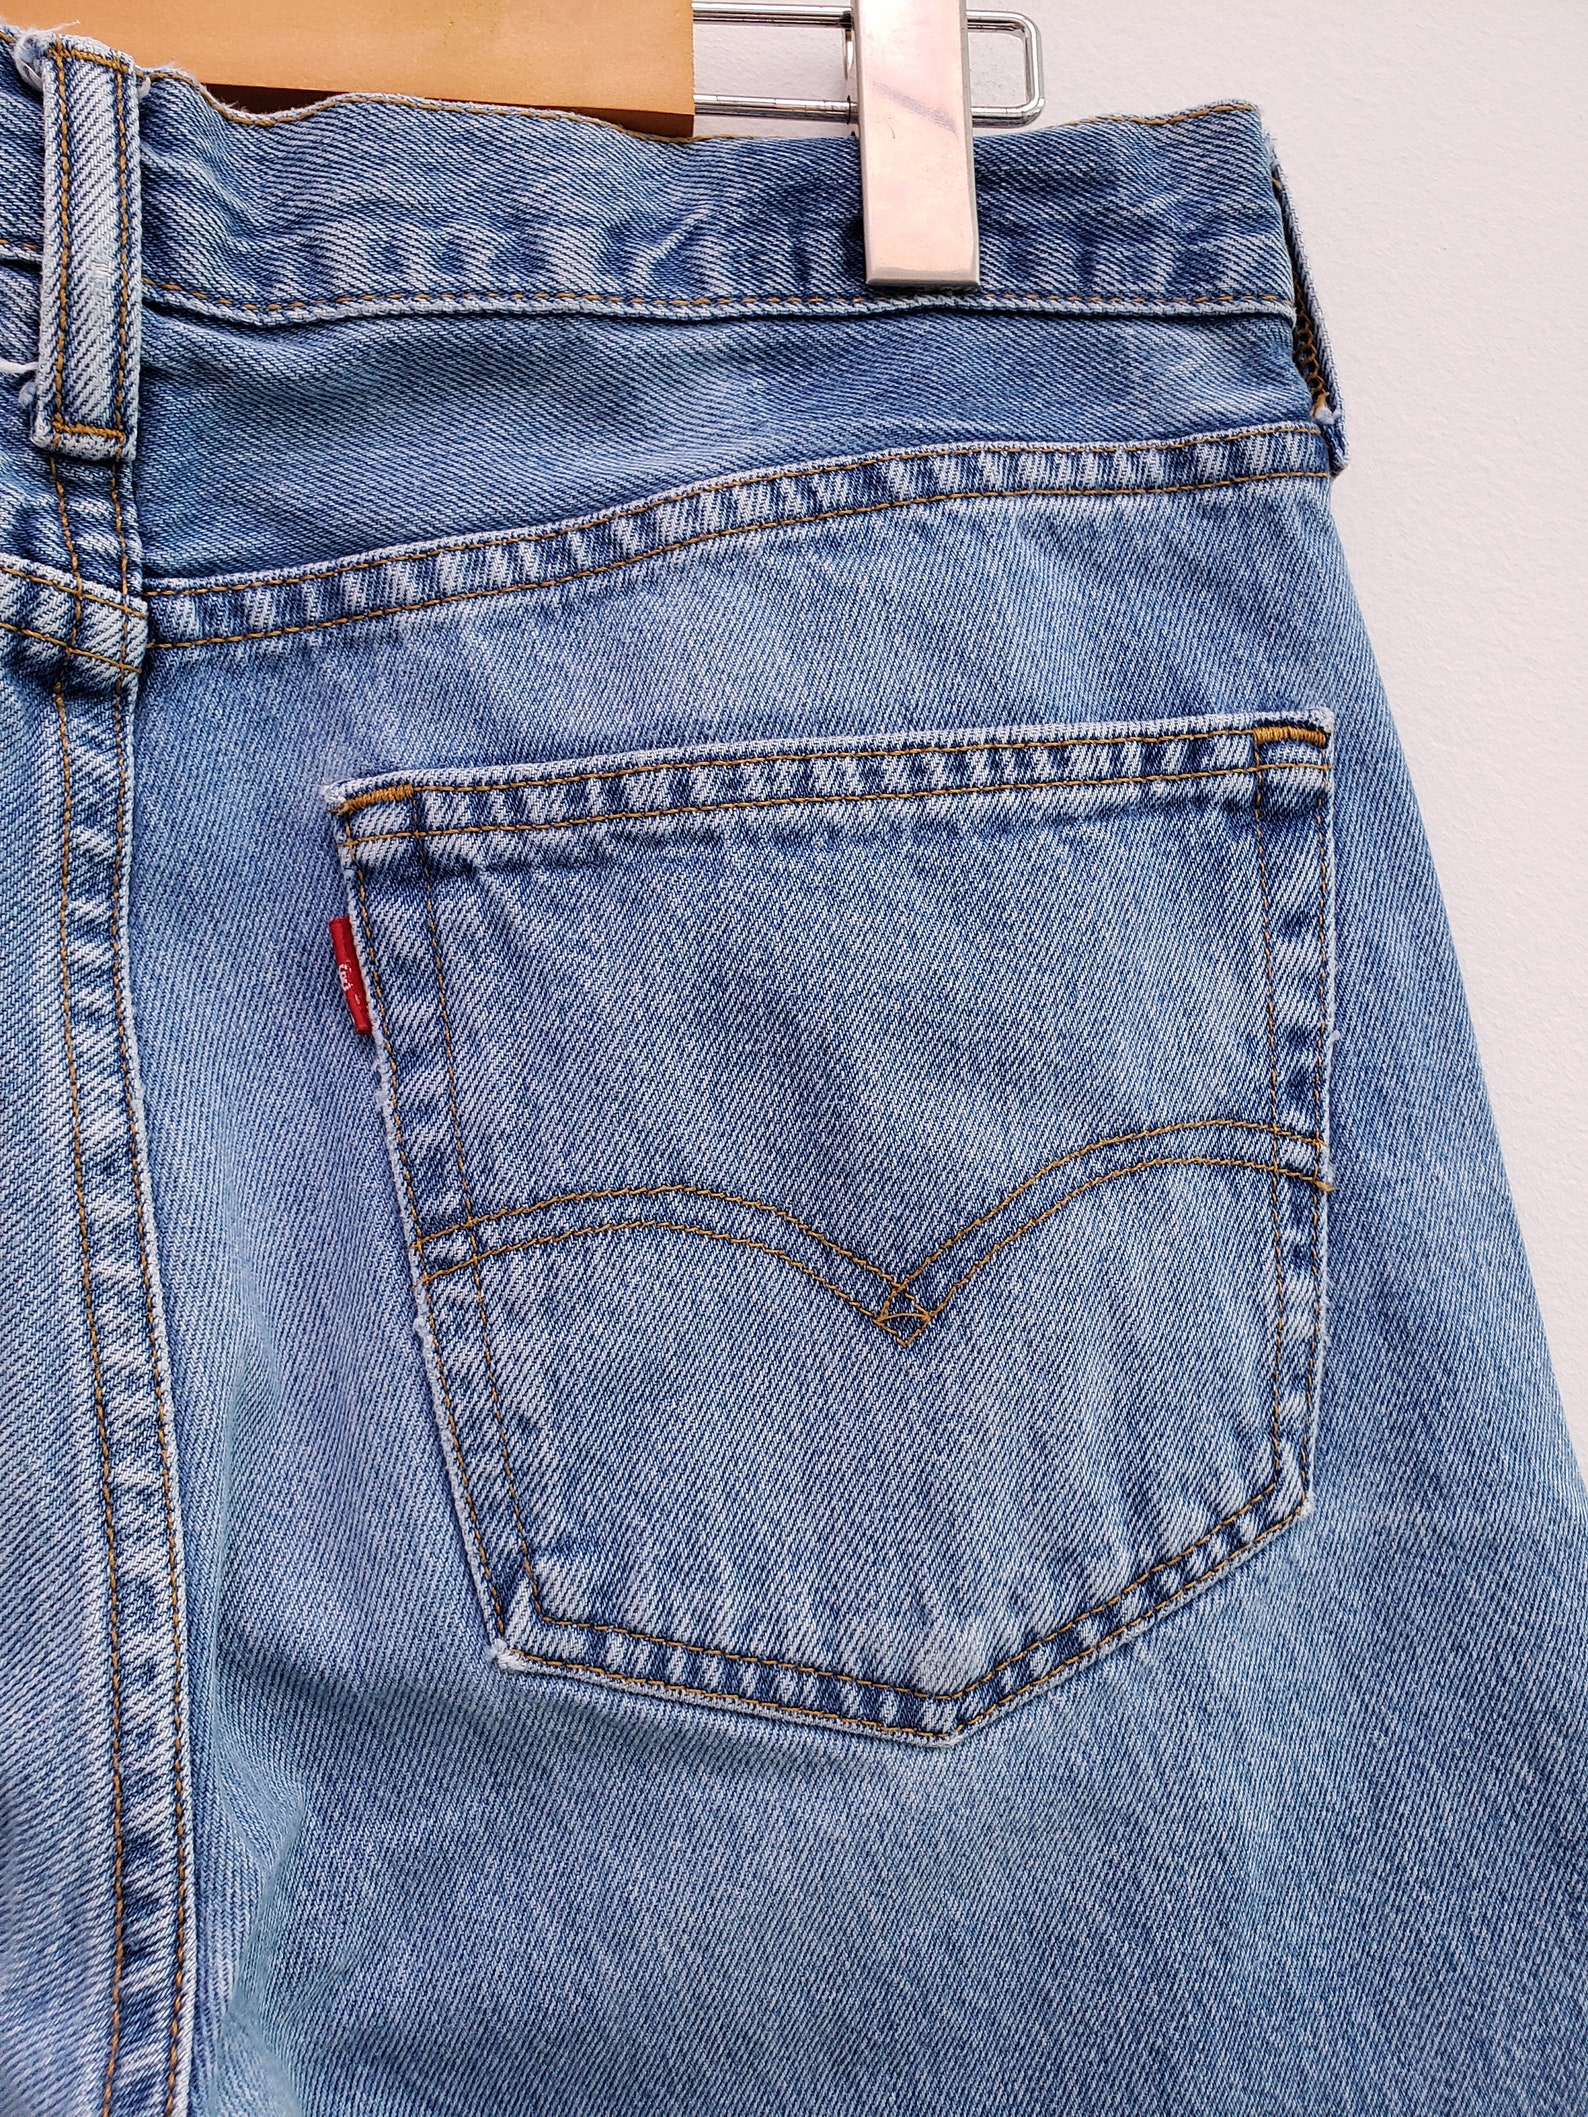 90s Y2K vintage LEVI'S 501 jeans classic blue denim button | Etsy